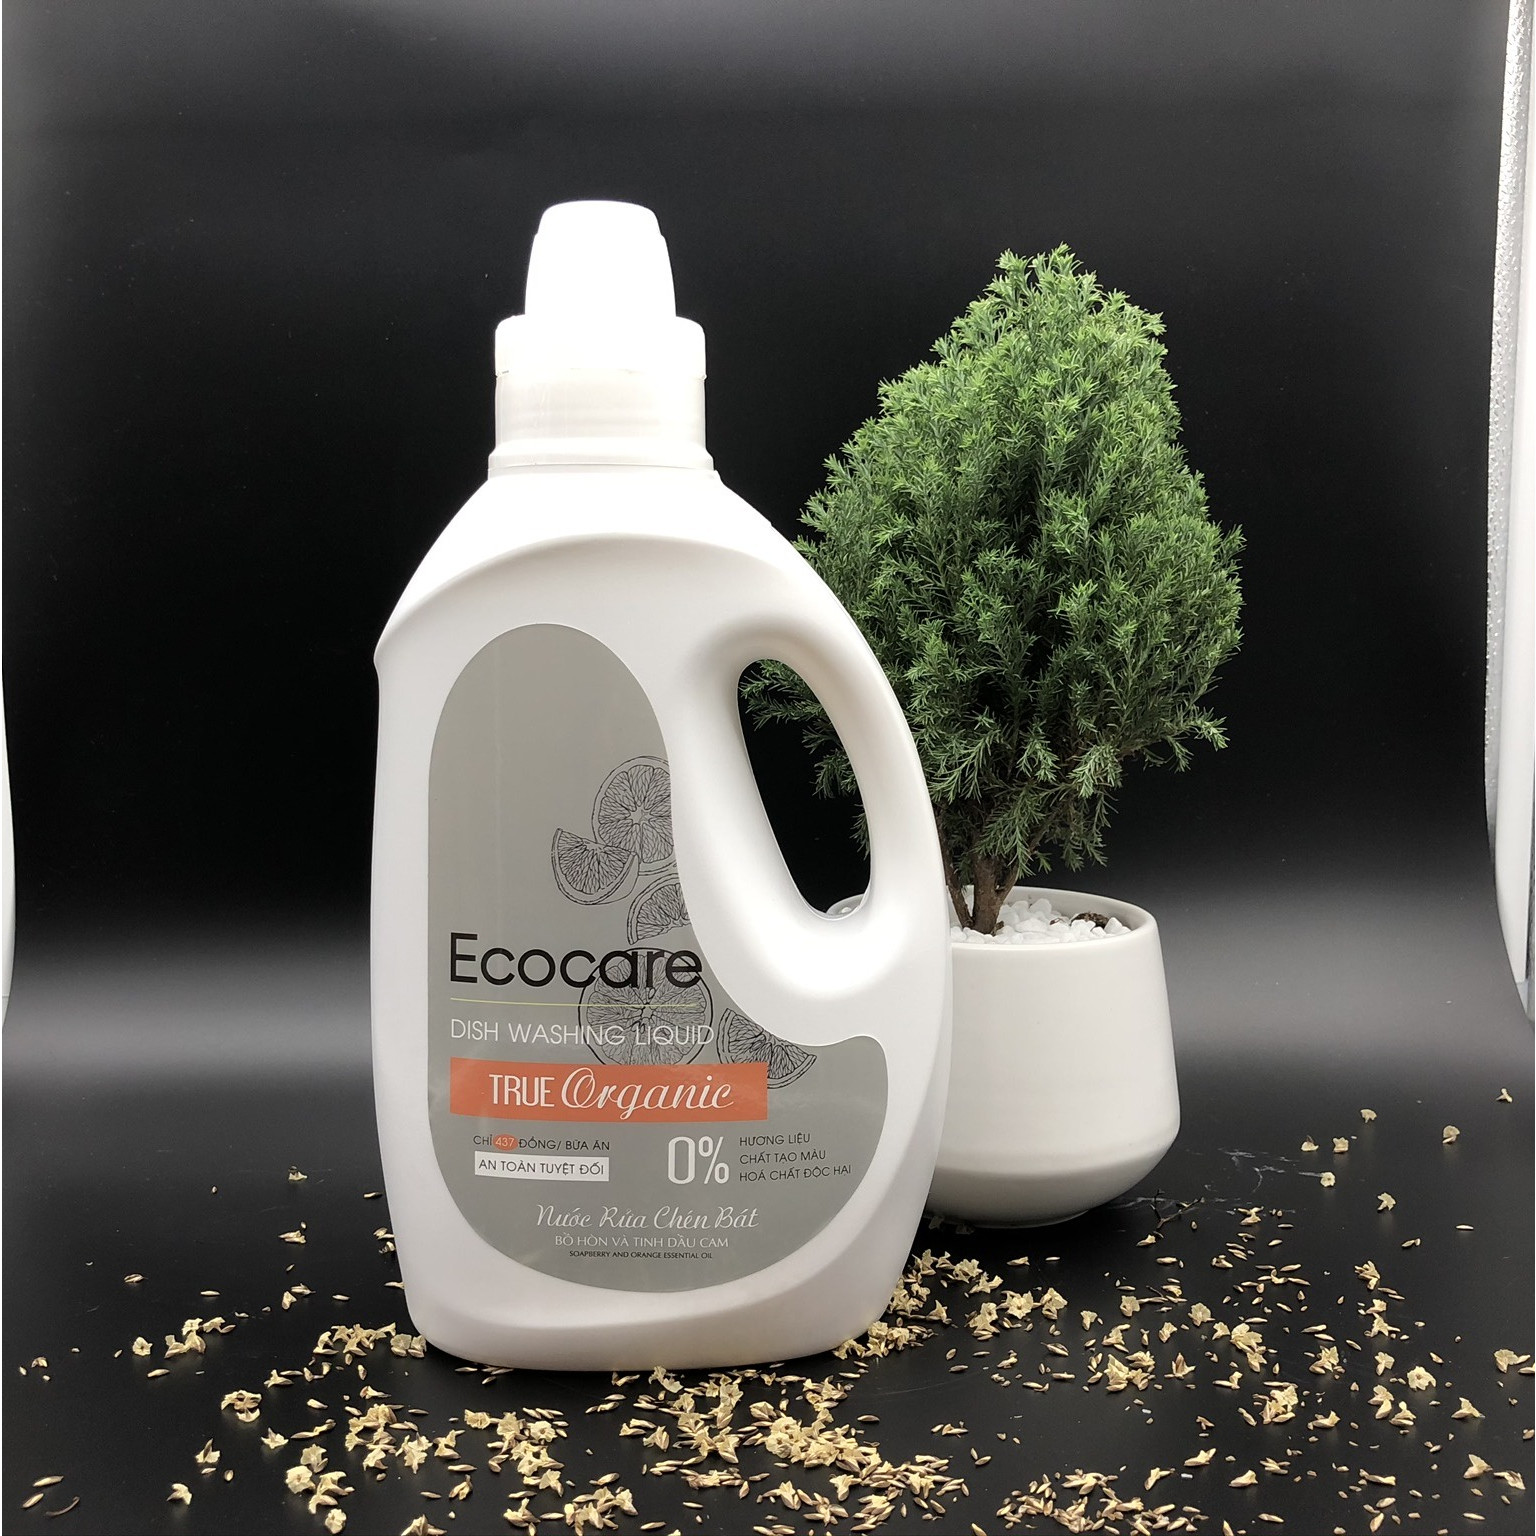 Nước rửa chén hữu cơ Bồ hòn và tinh dầu Vỏ Cam 2000ml thương hiệu Ecocare